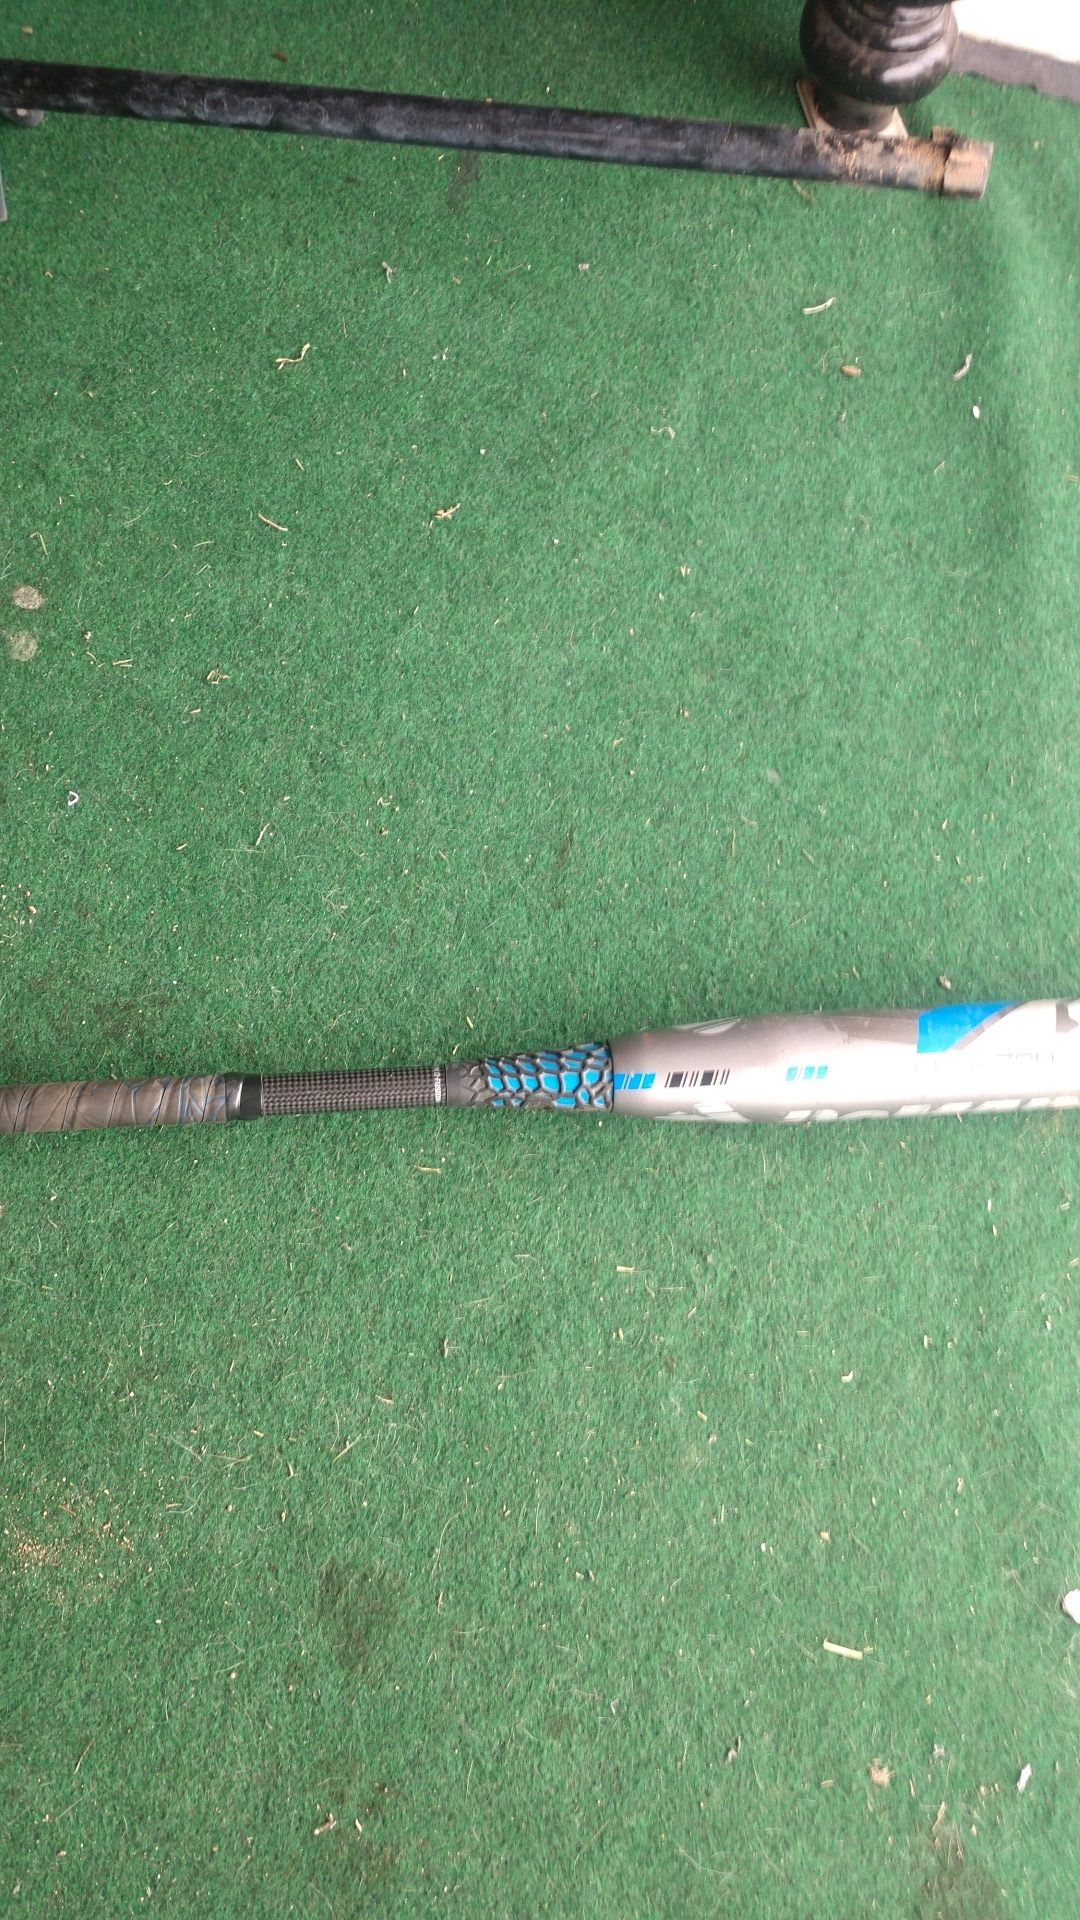 DeMarini CF7 Baseball Bat 30/19......2-1/4" barrel